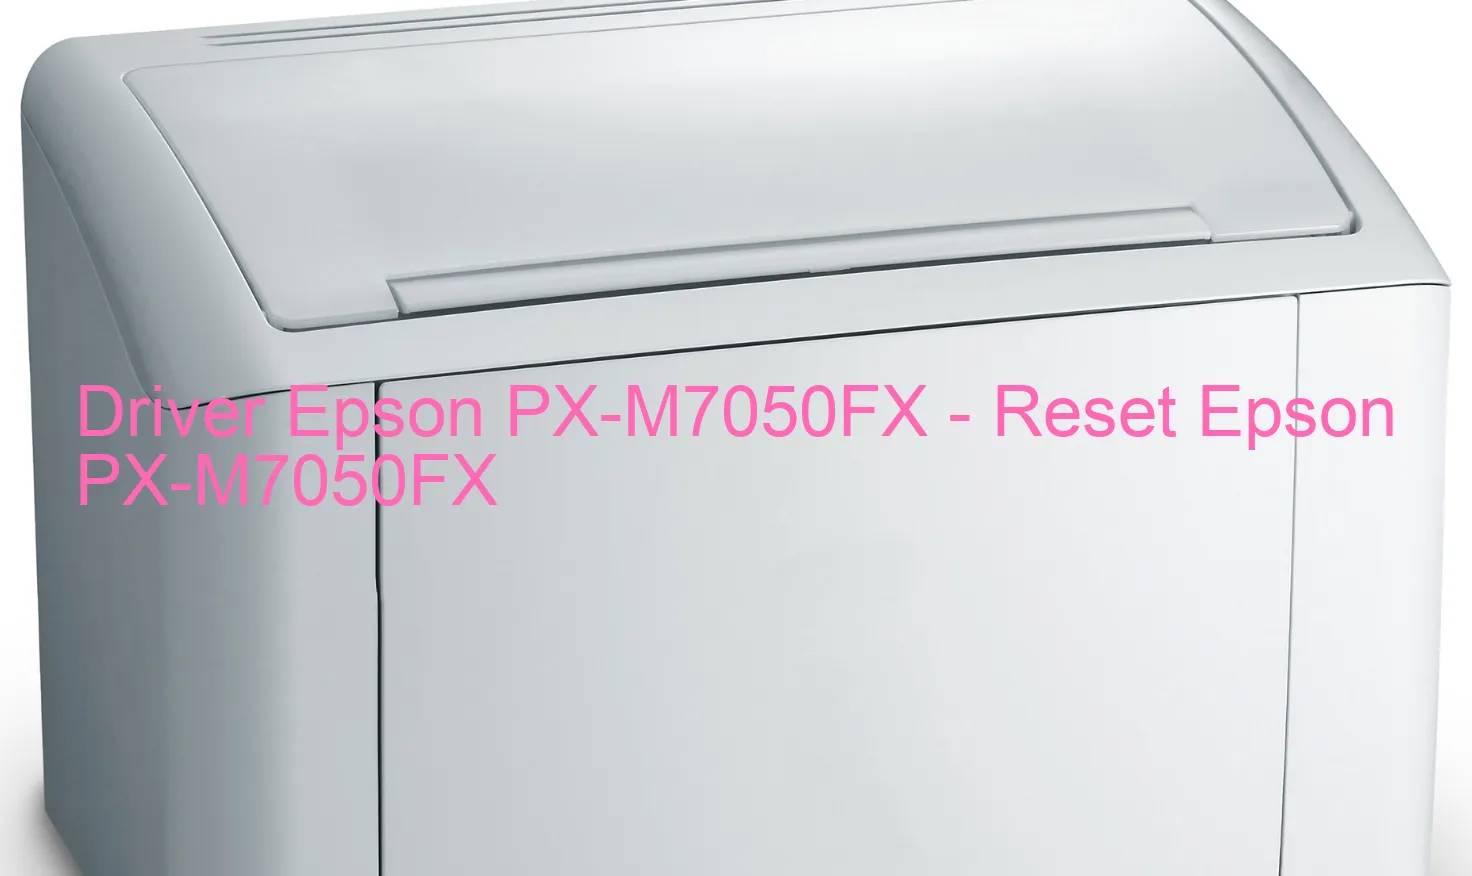 Epson PX-M7050FXのドライバー、Epson PX-M7050FXのリセットソフトウェア